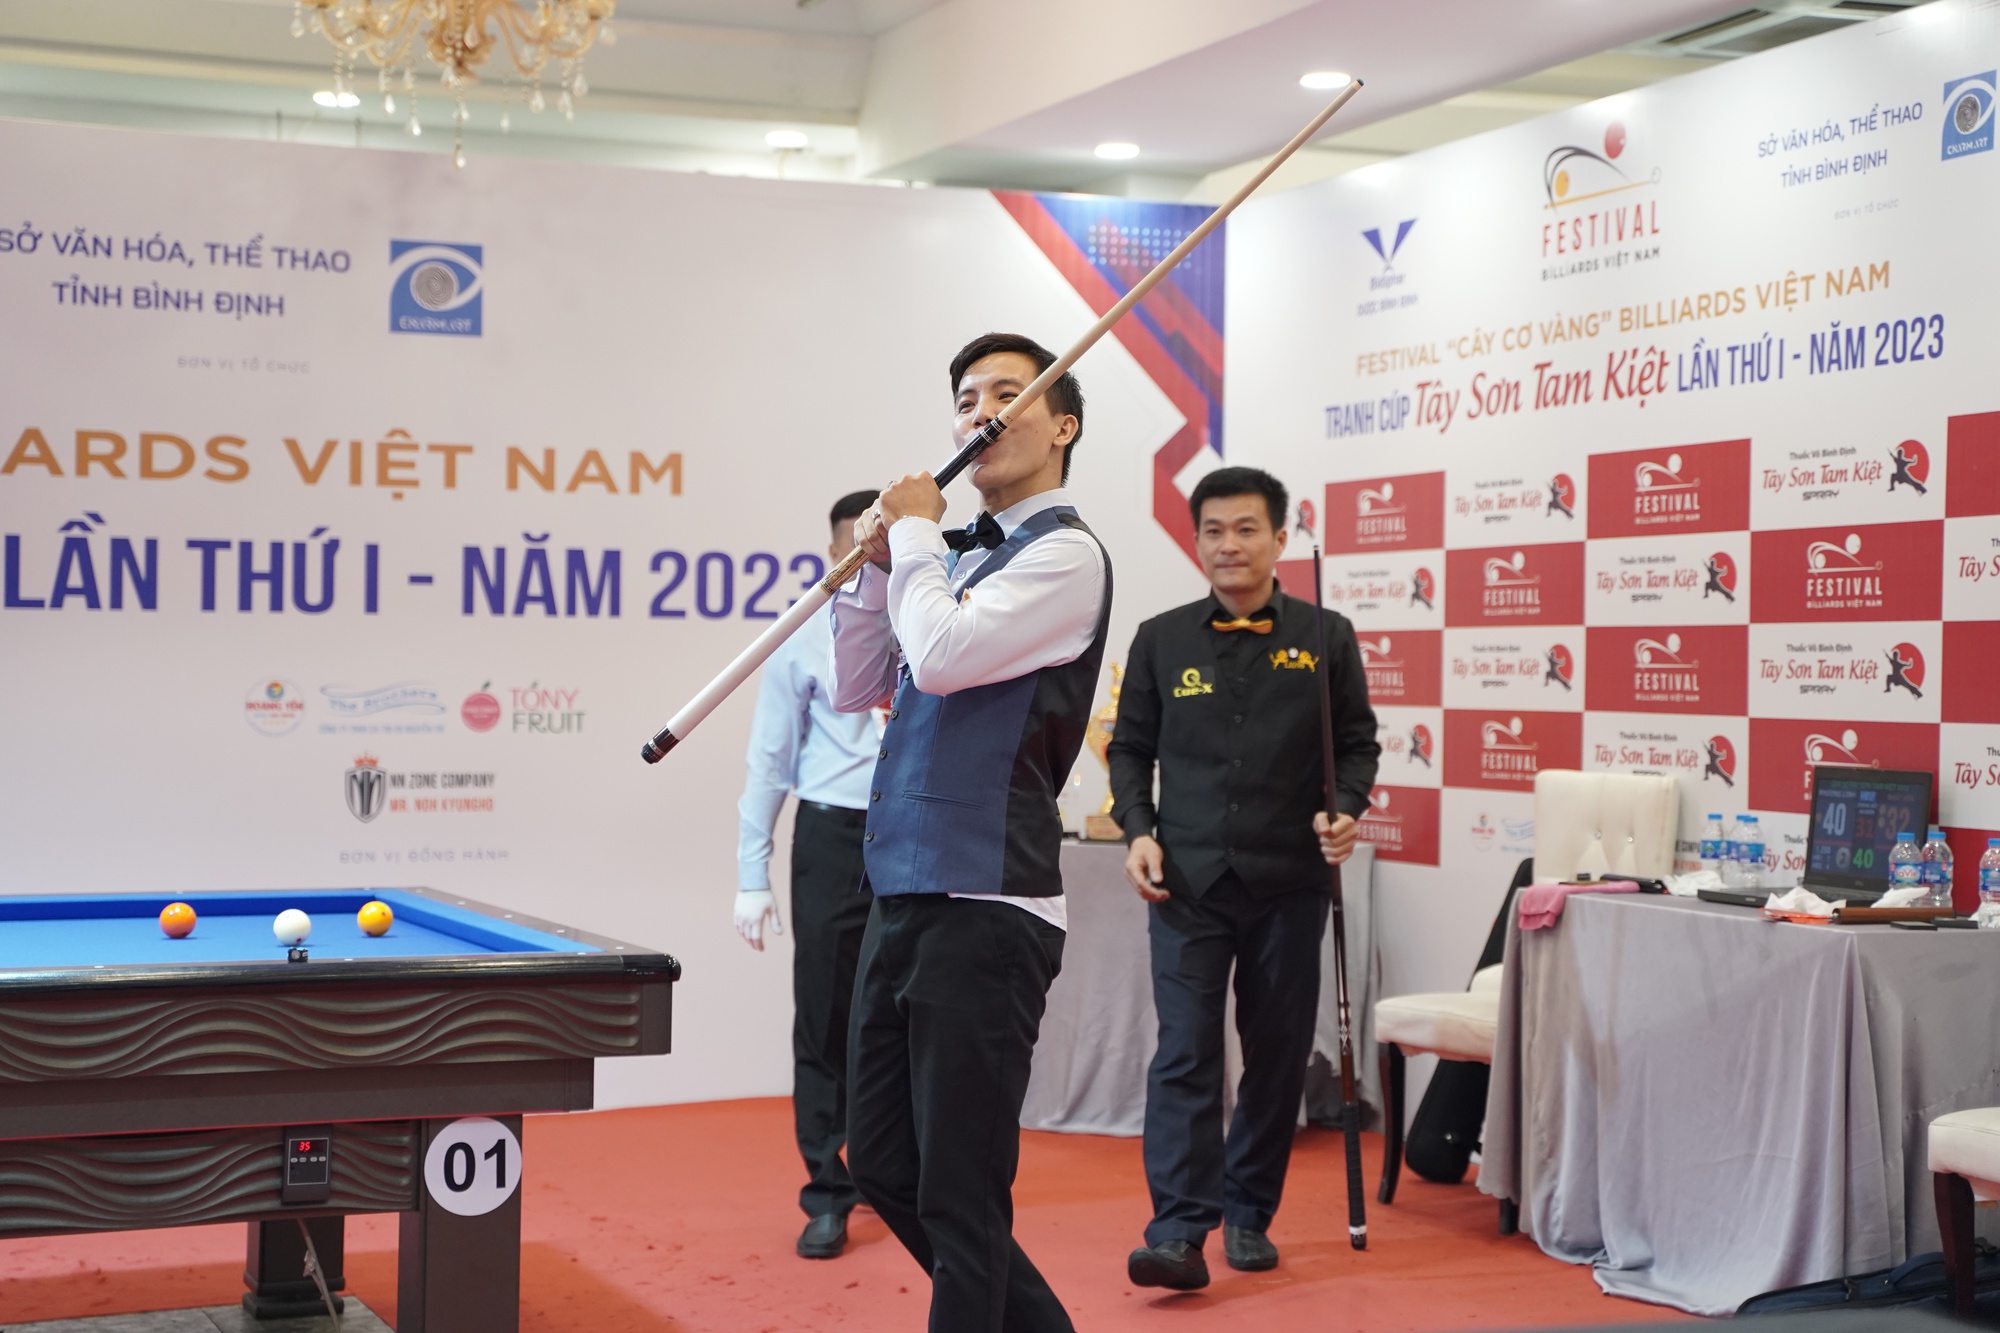 Nguyễn Huỳnh Phương Linh vô địch Festival billiards Cây cơ vàng 2023 - Ảnh 3.